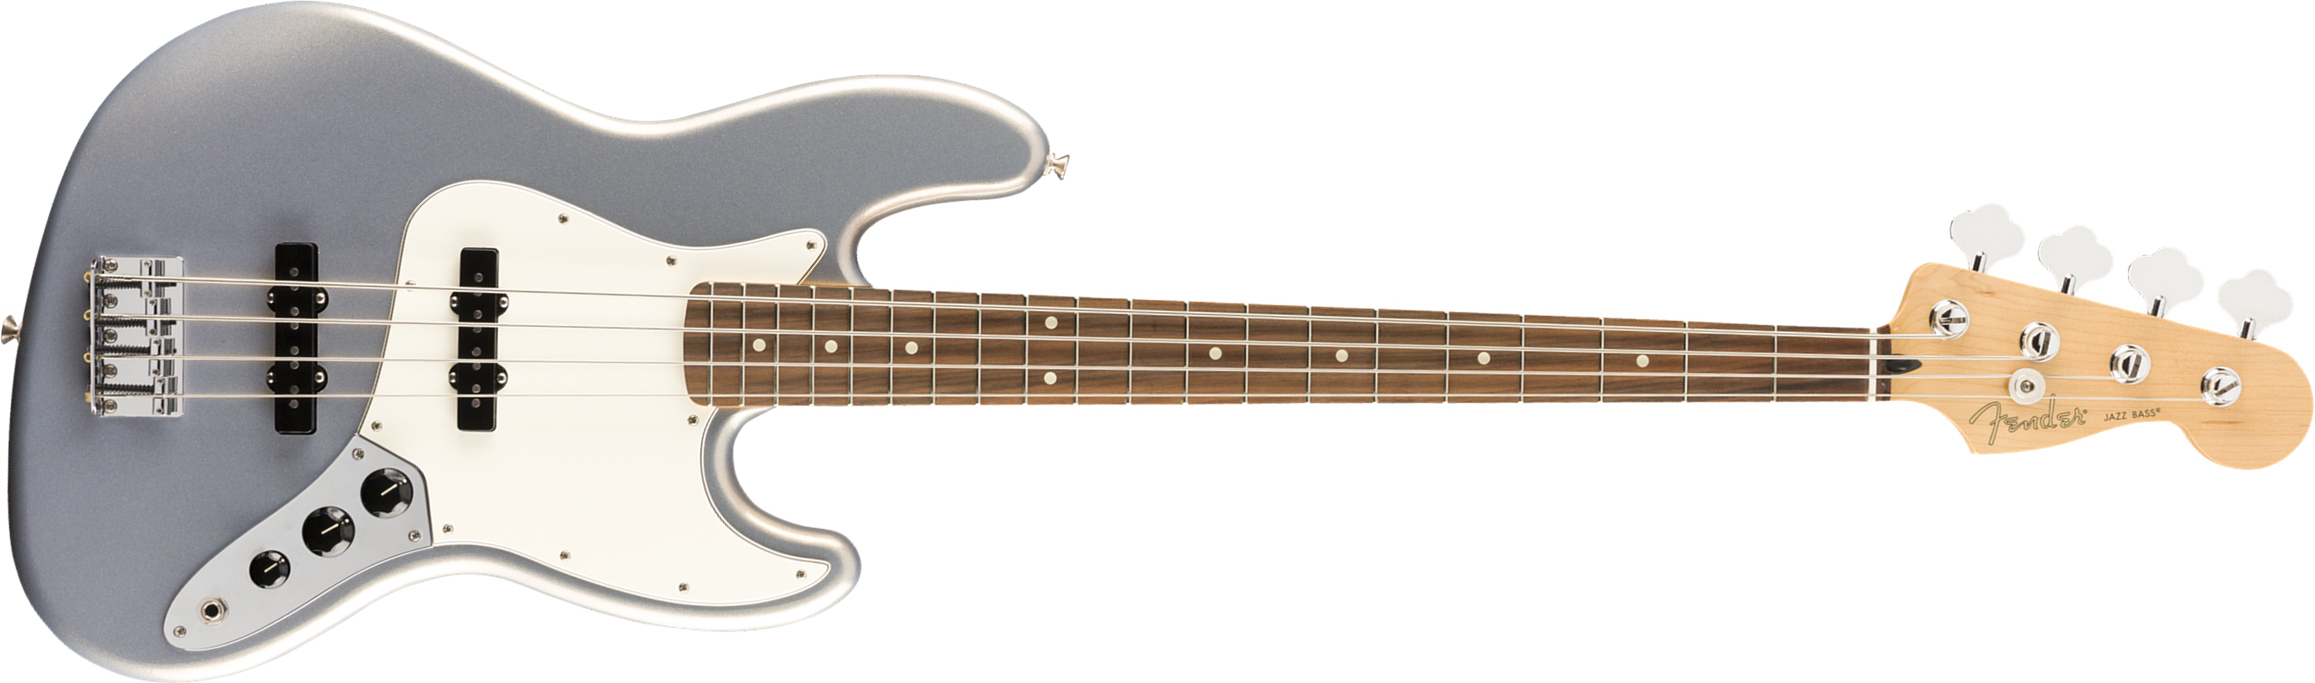 Fender Jazz Bass Player Mex Pf - Silver - Bajo eléctrico de cuerpo sólido - Main picture